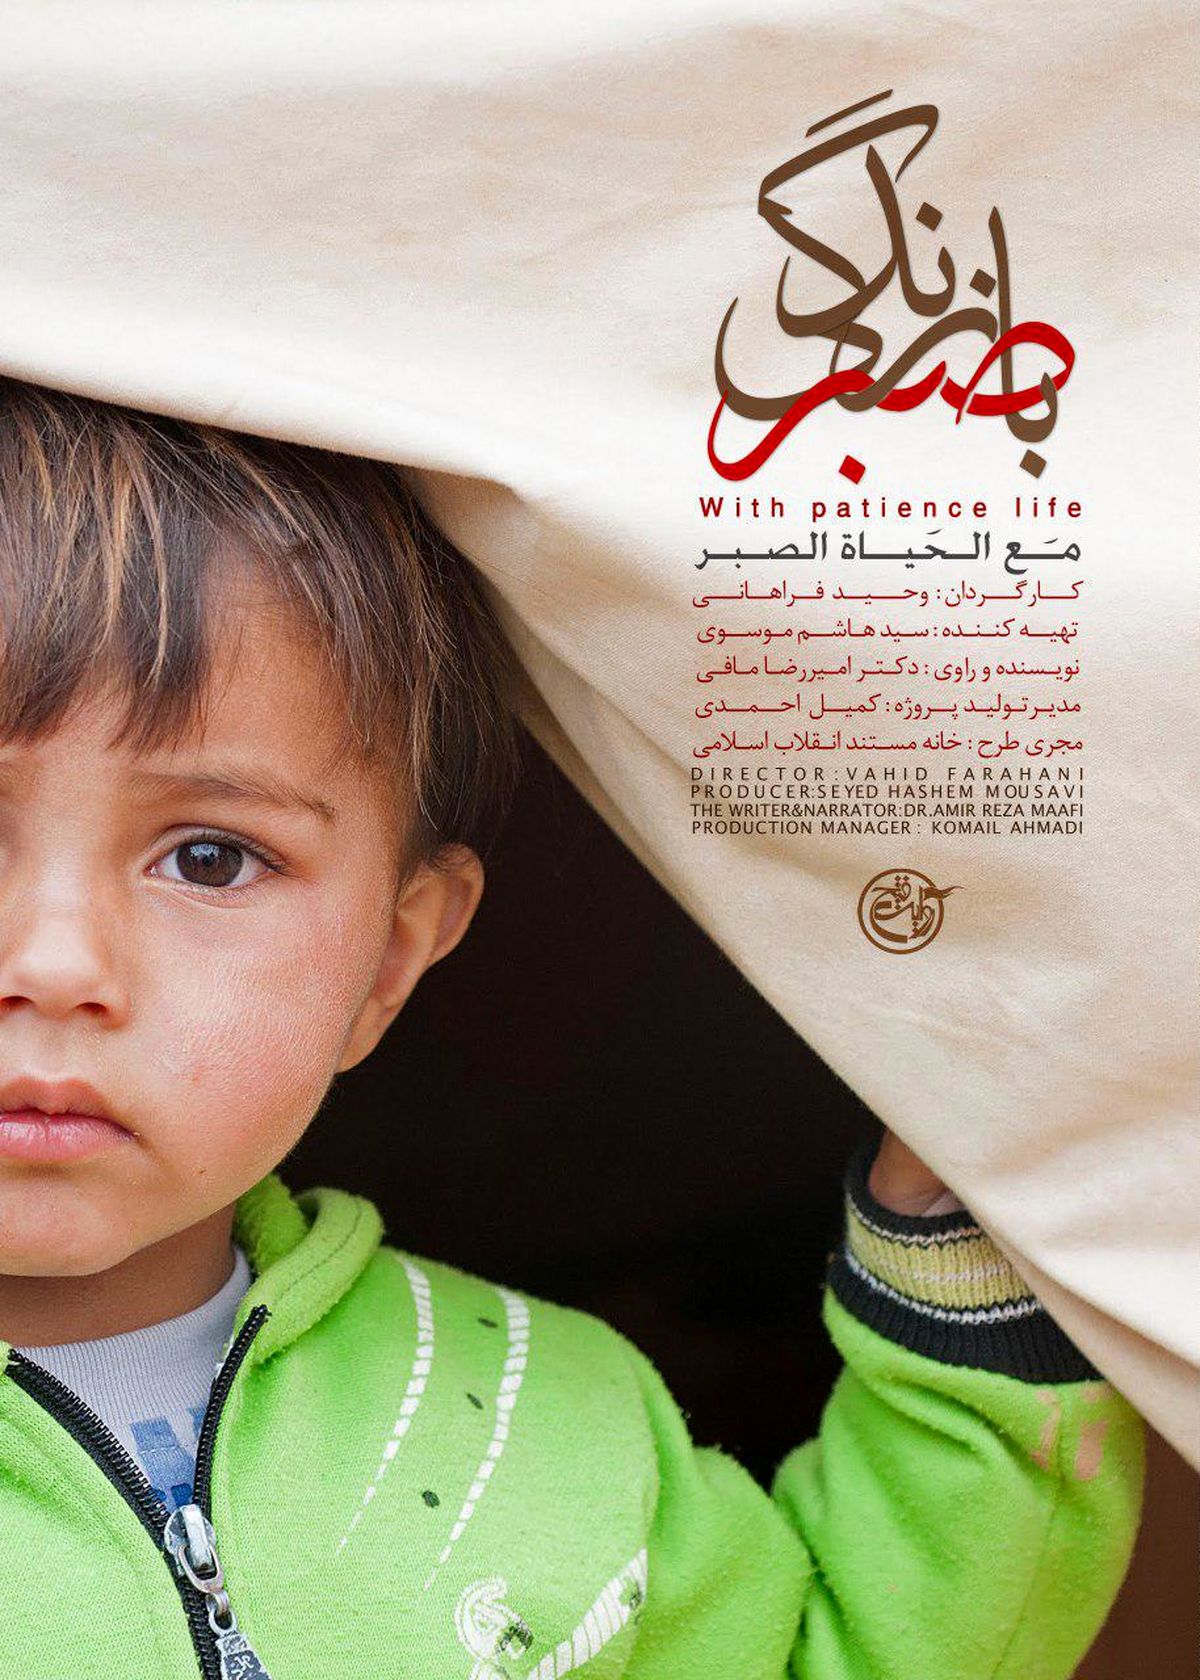 "با صبر زندگی"؛ روایتی تکان دهنده از مصائب کودکان سوری